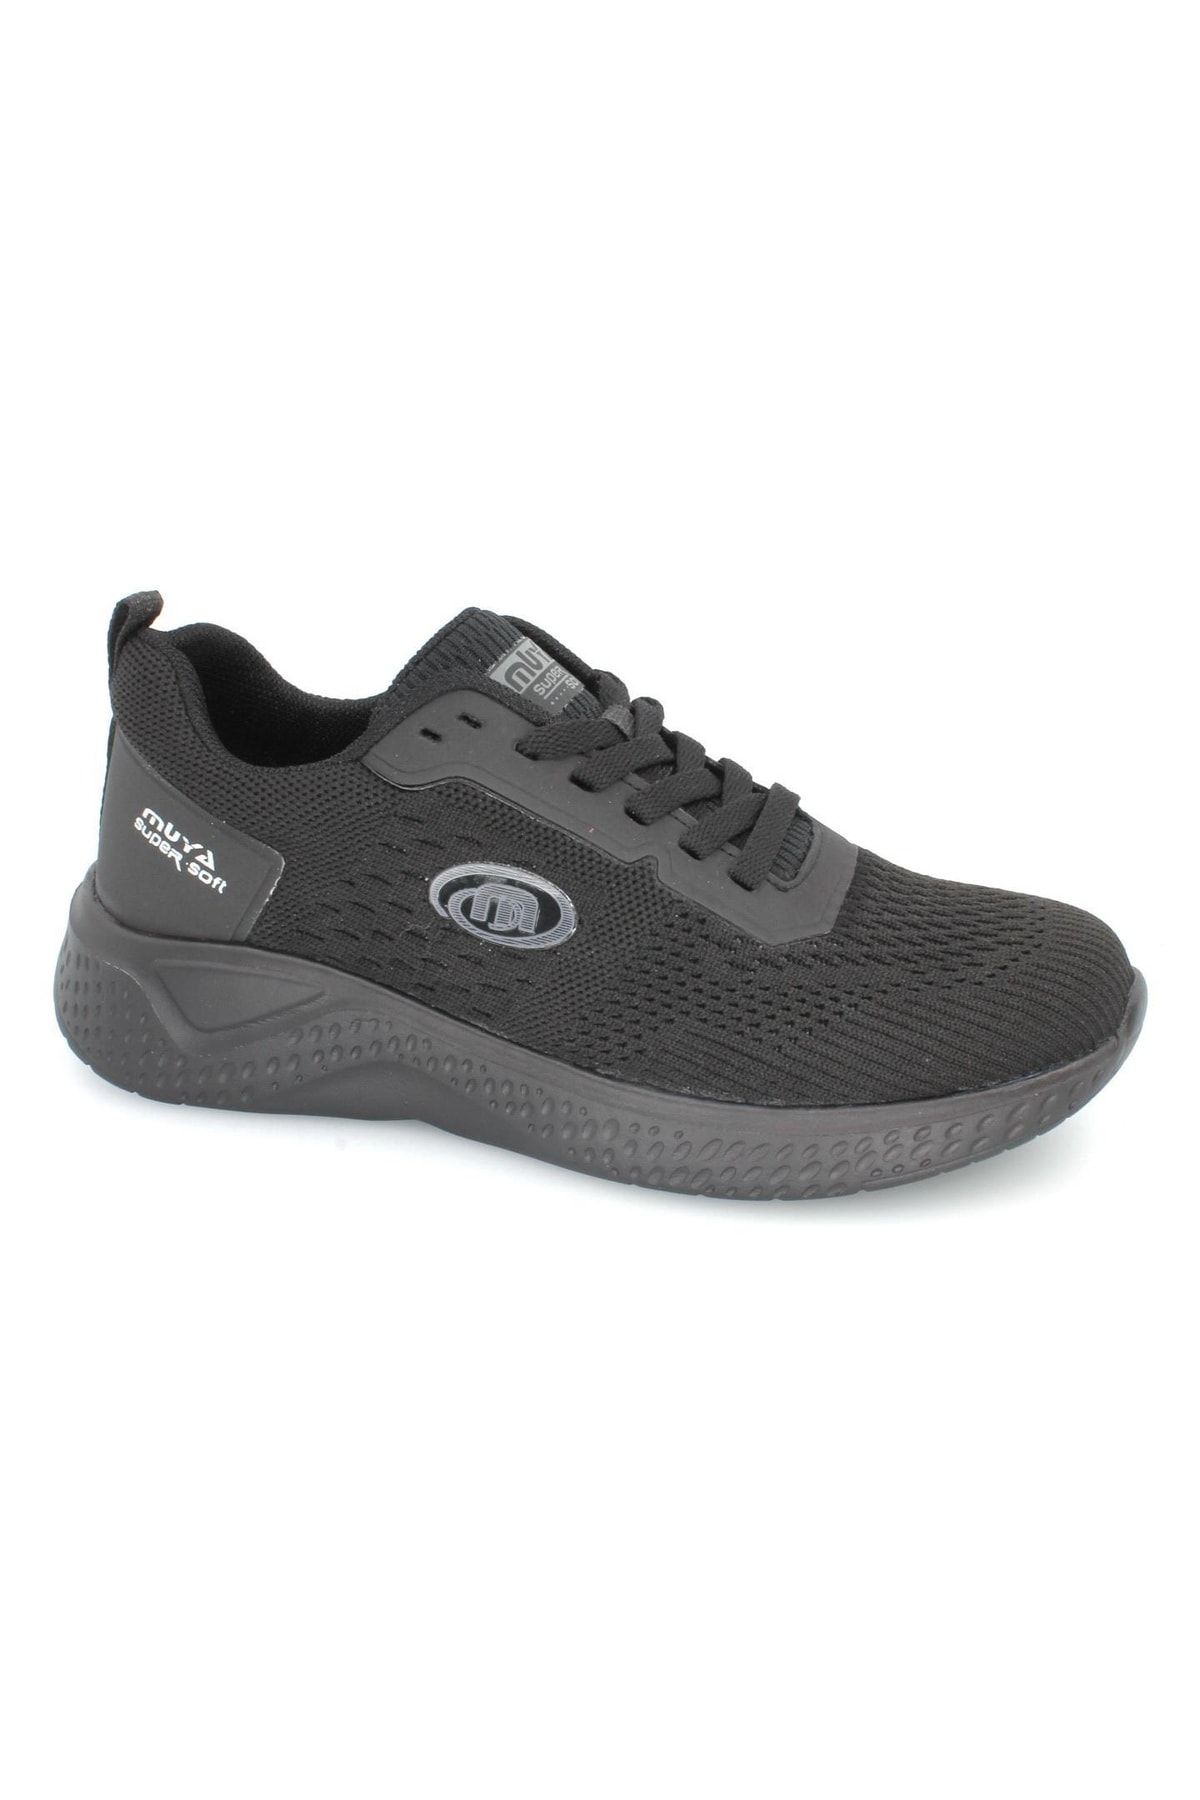 Muya Orthopedix Smash Bağcıklı Unisex Spor Ayakkabı Sneaker 323639